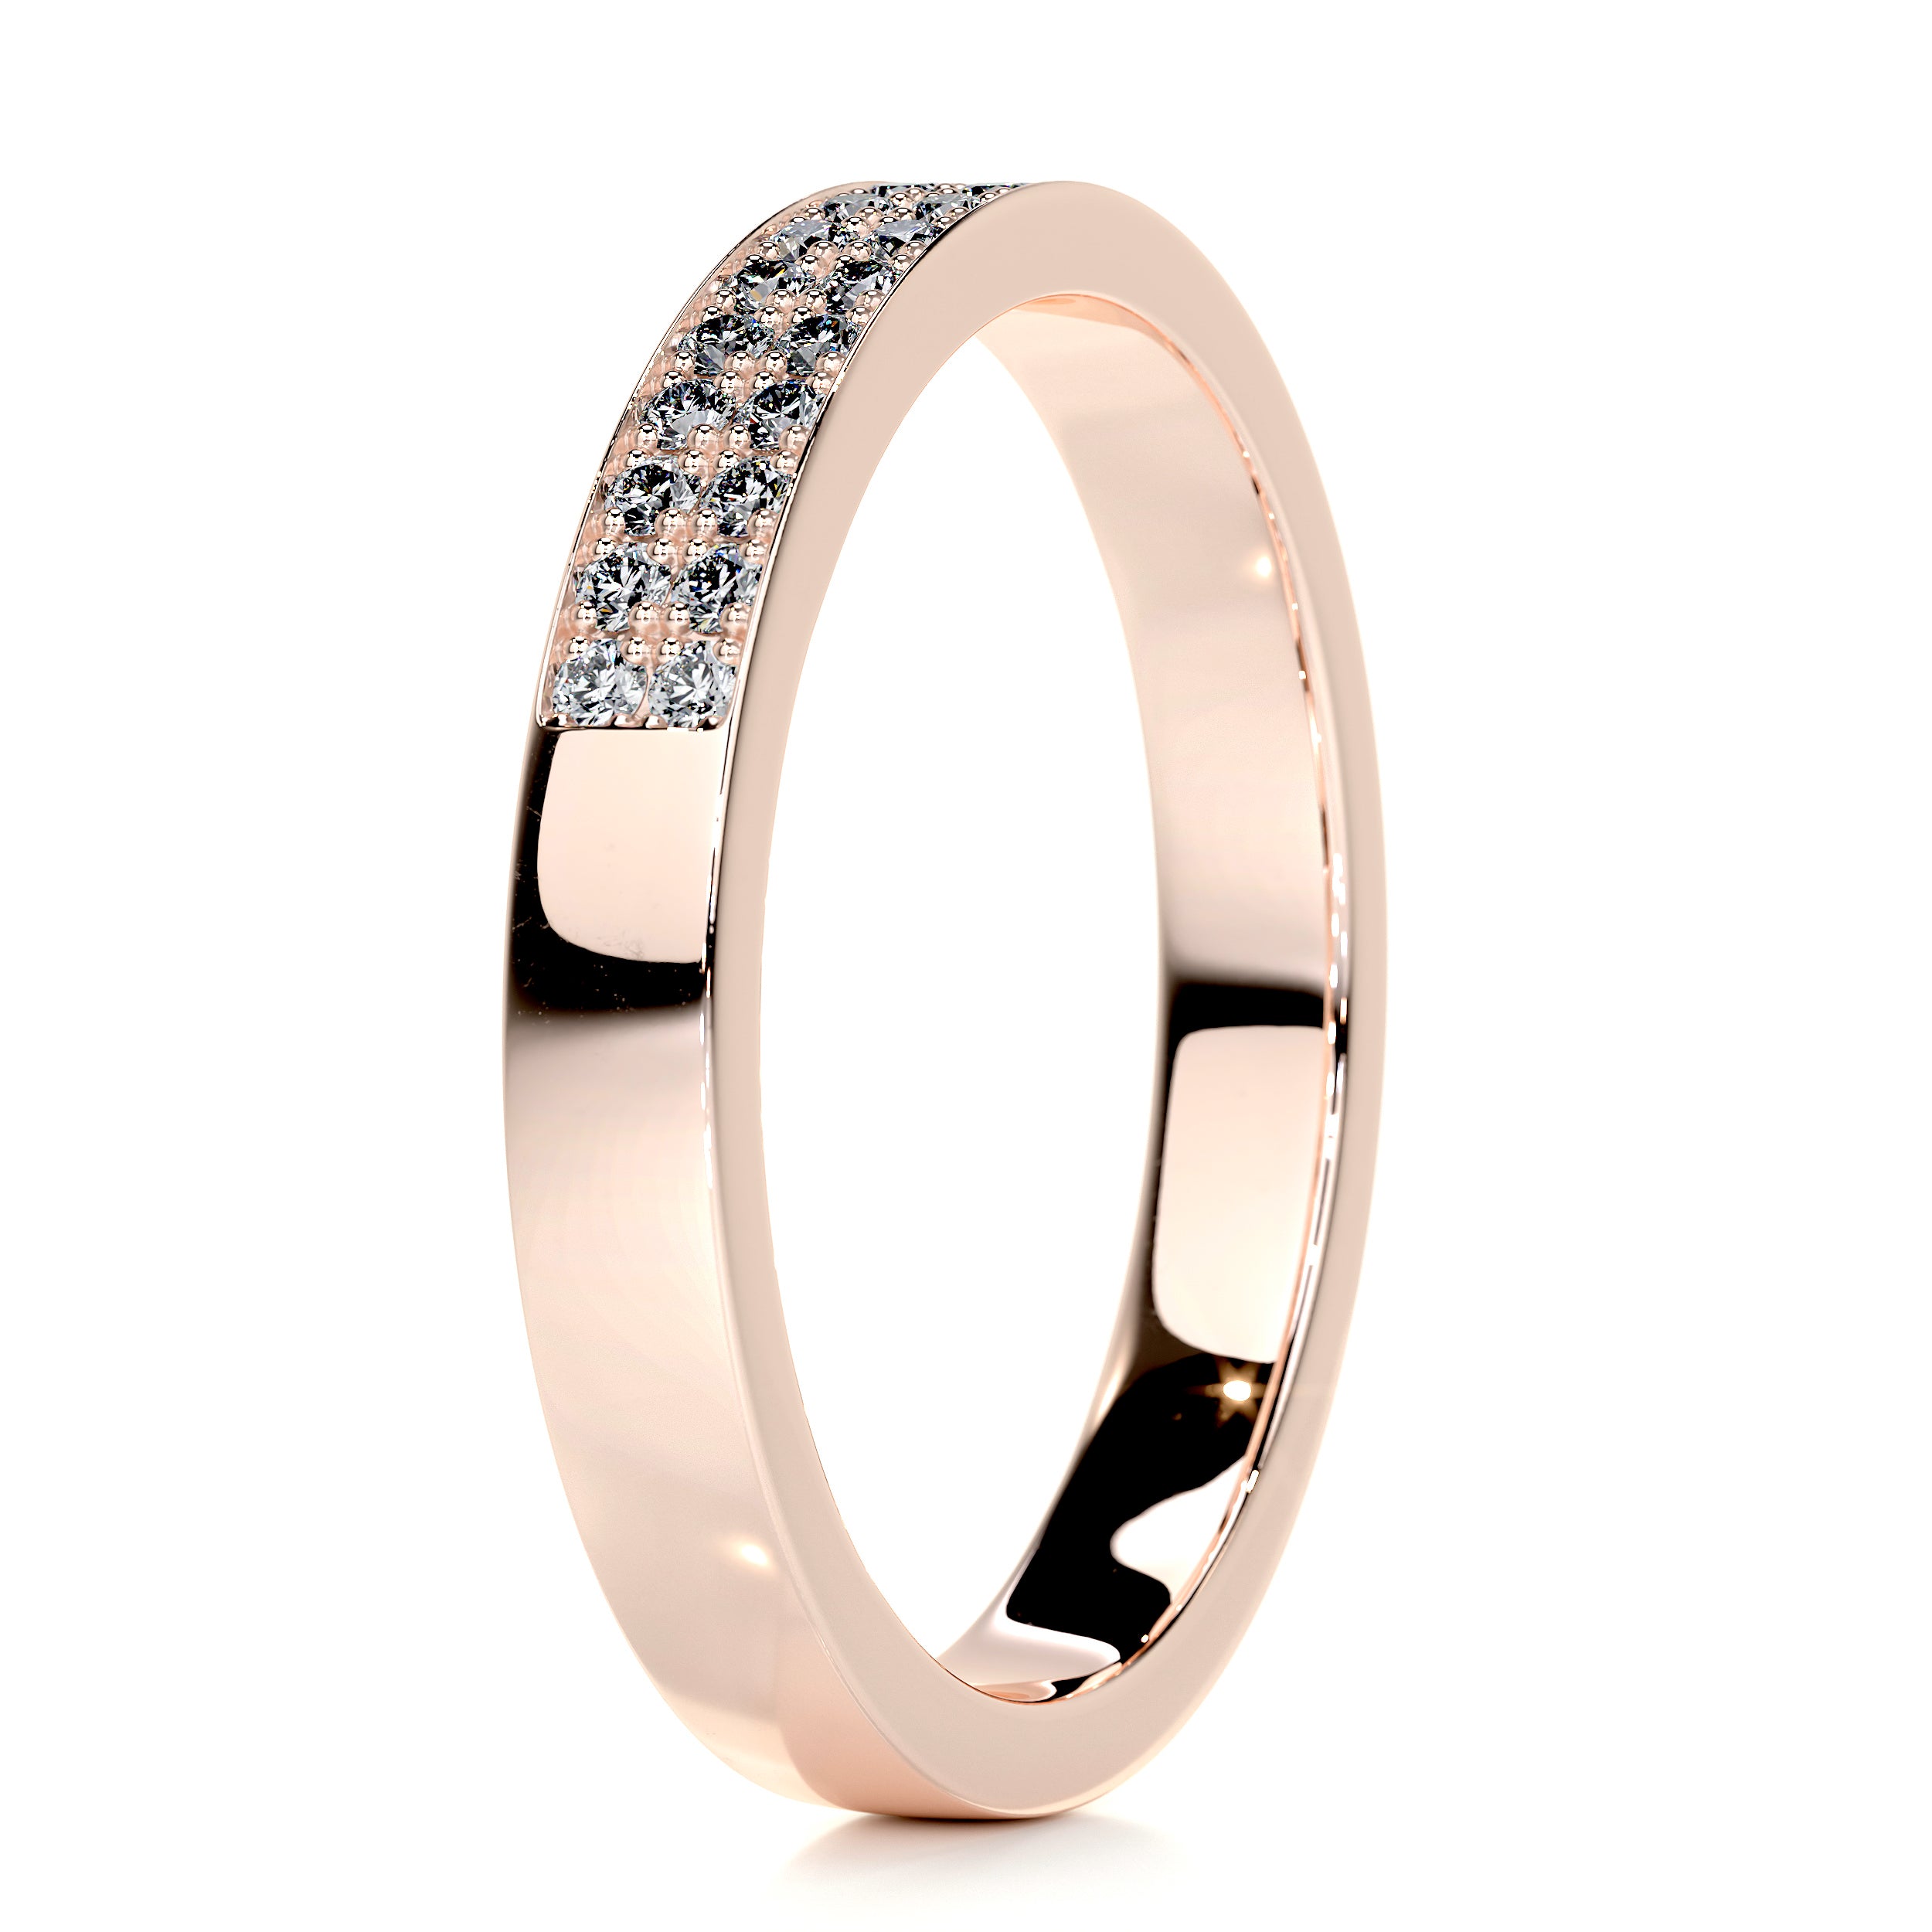 June Diamond Wedding Ring   (0.2 Carat) - 14K Rose Gold